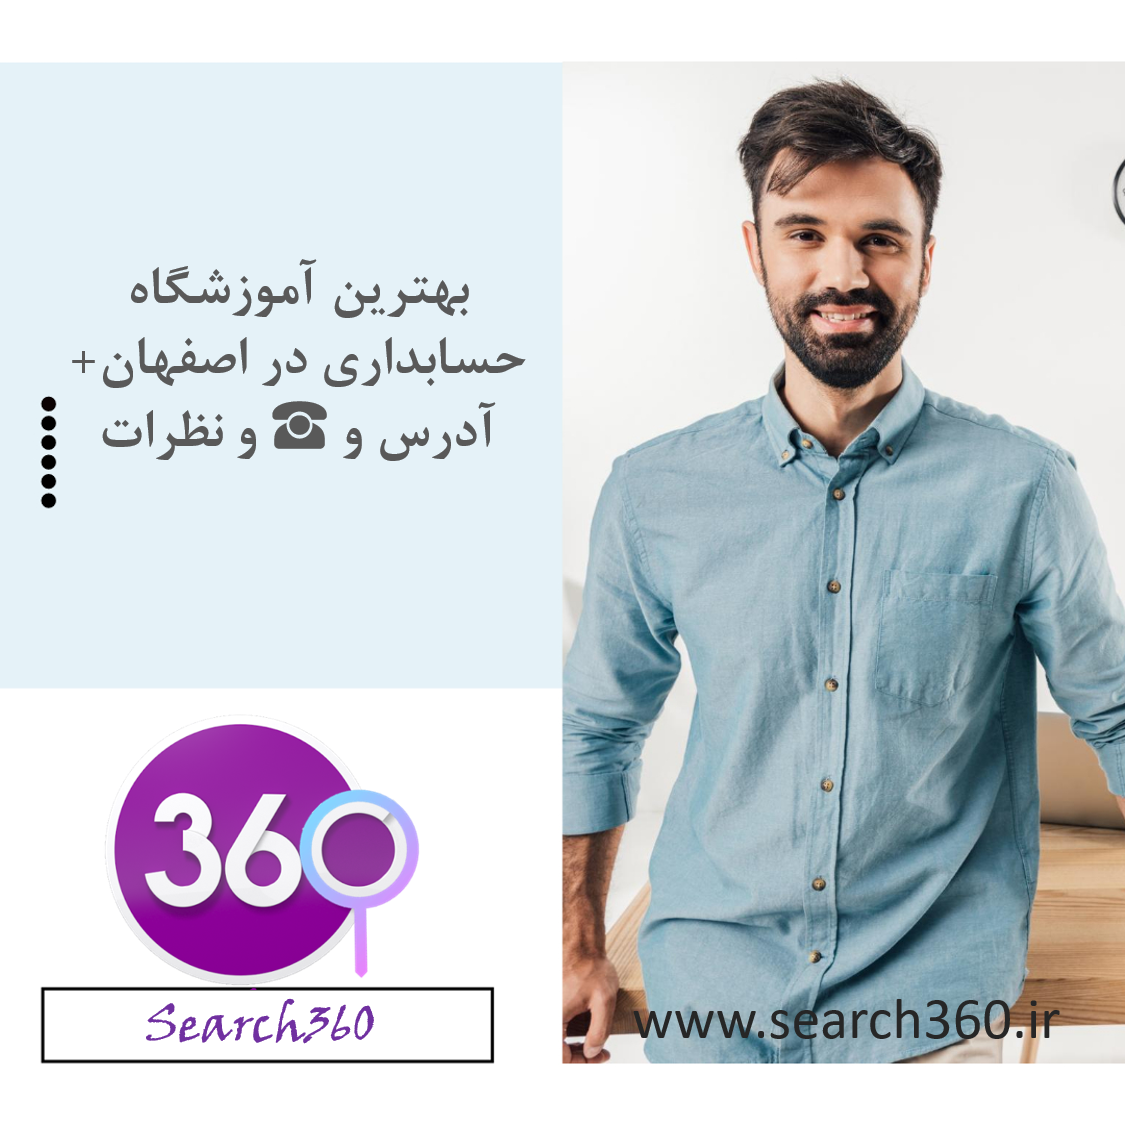 بهترین آموزشگاه حسابداری در اصفهان با آدرس، تلفن ☎️ و نظرات